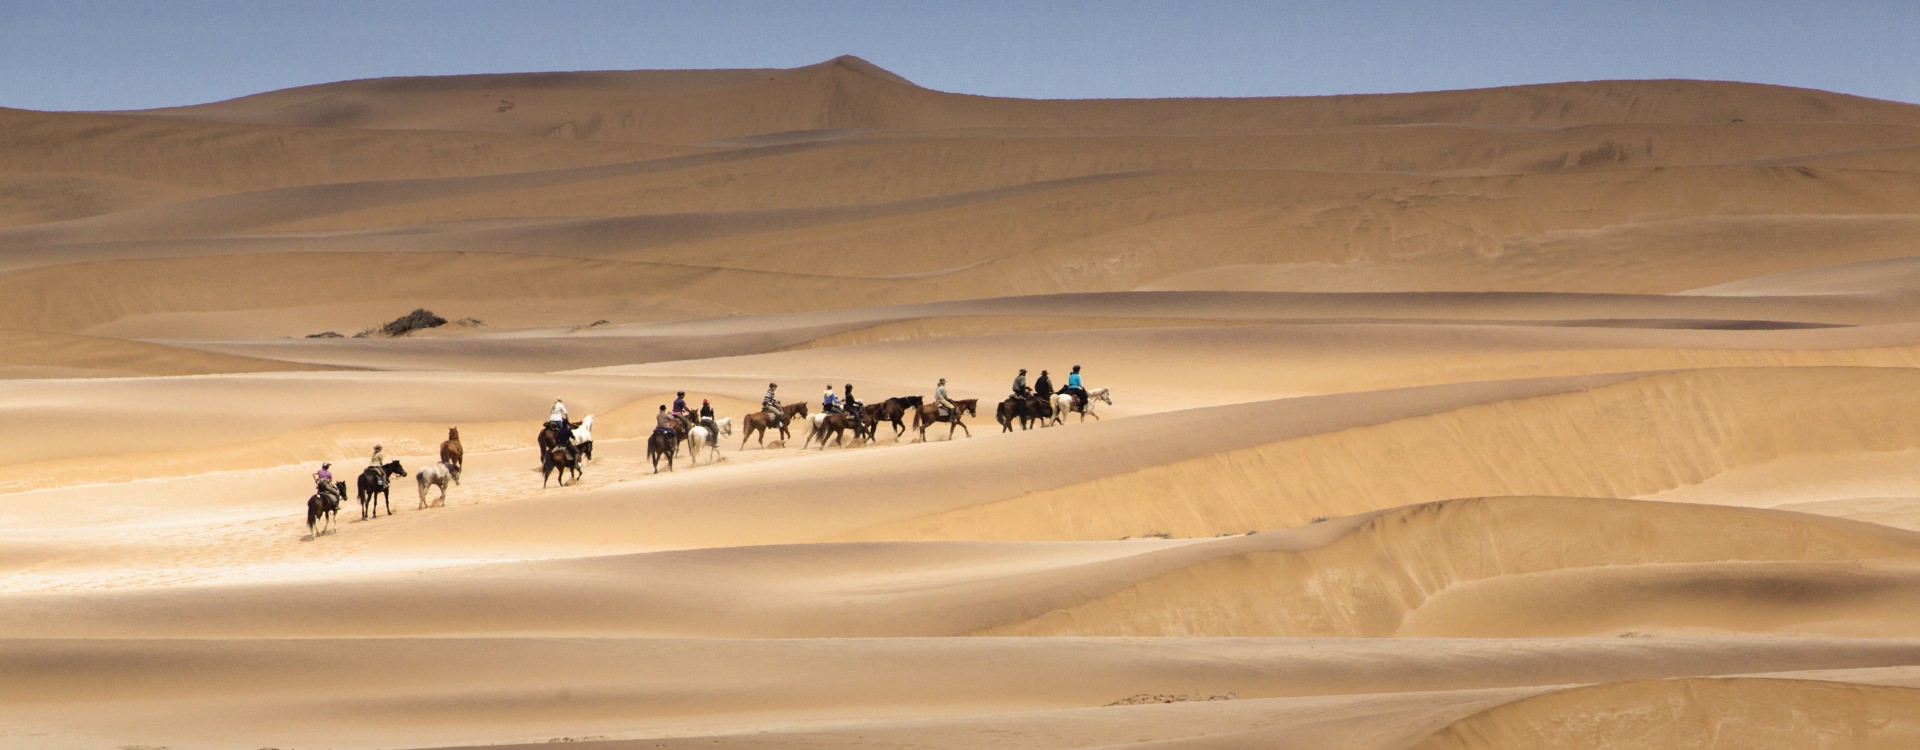 Crossing the Namib Desert on horseback